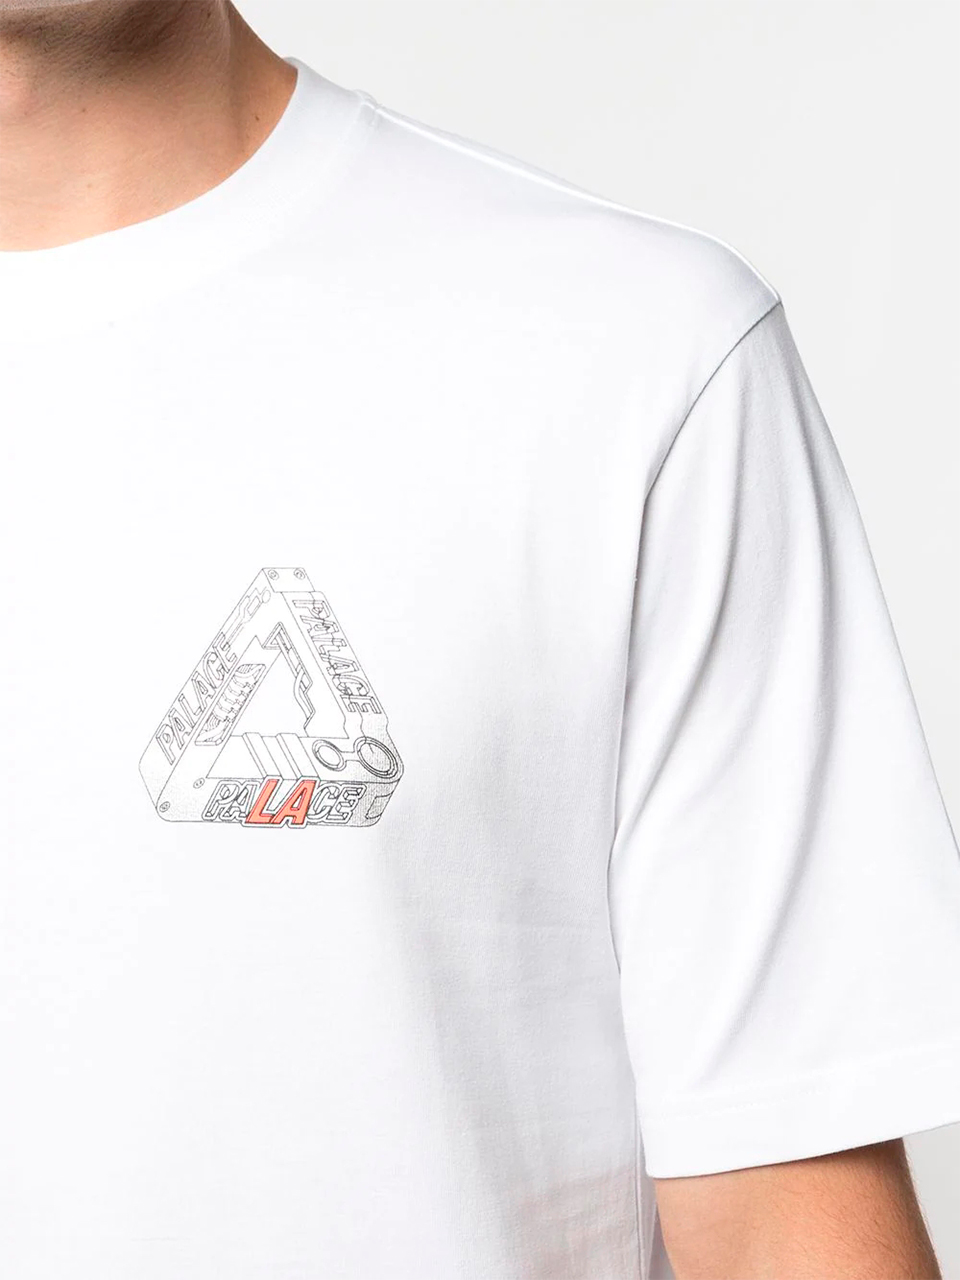 Imagem de: Camiseta Palace Branca com Logo